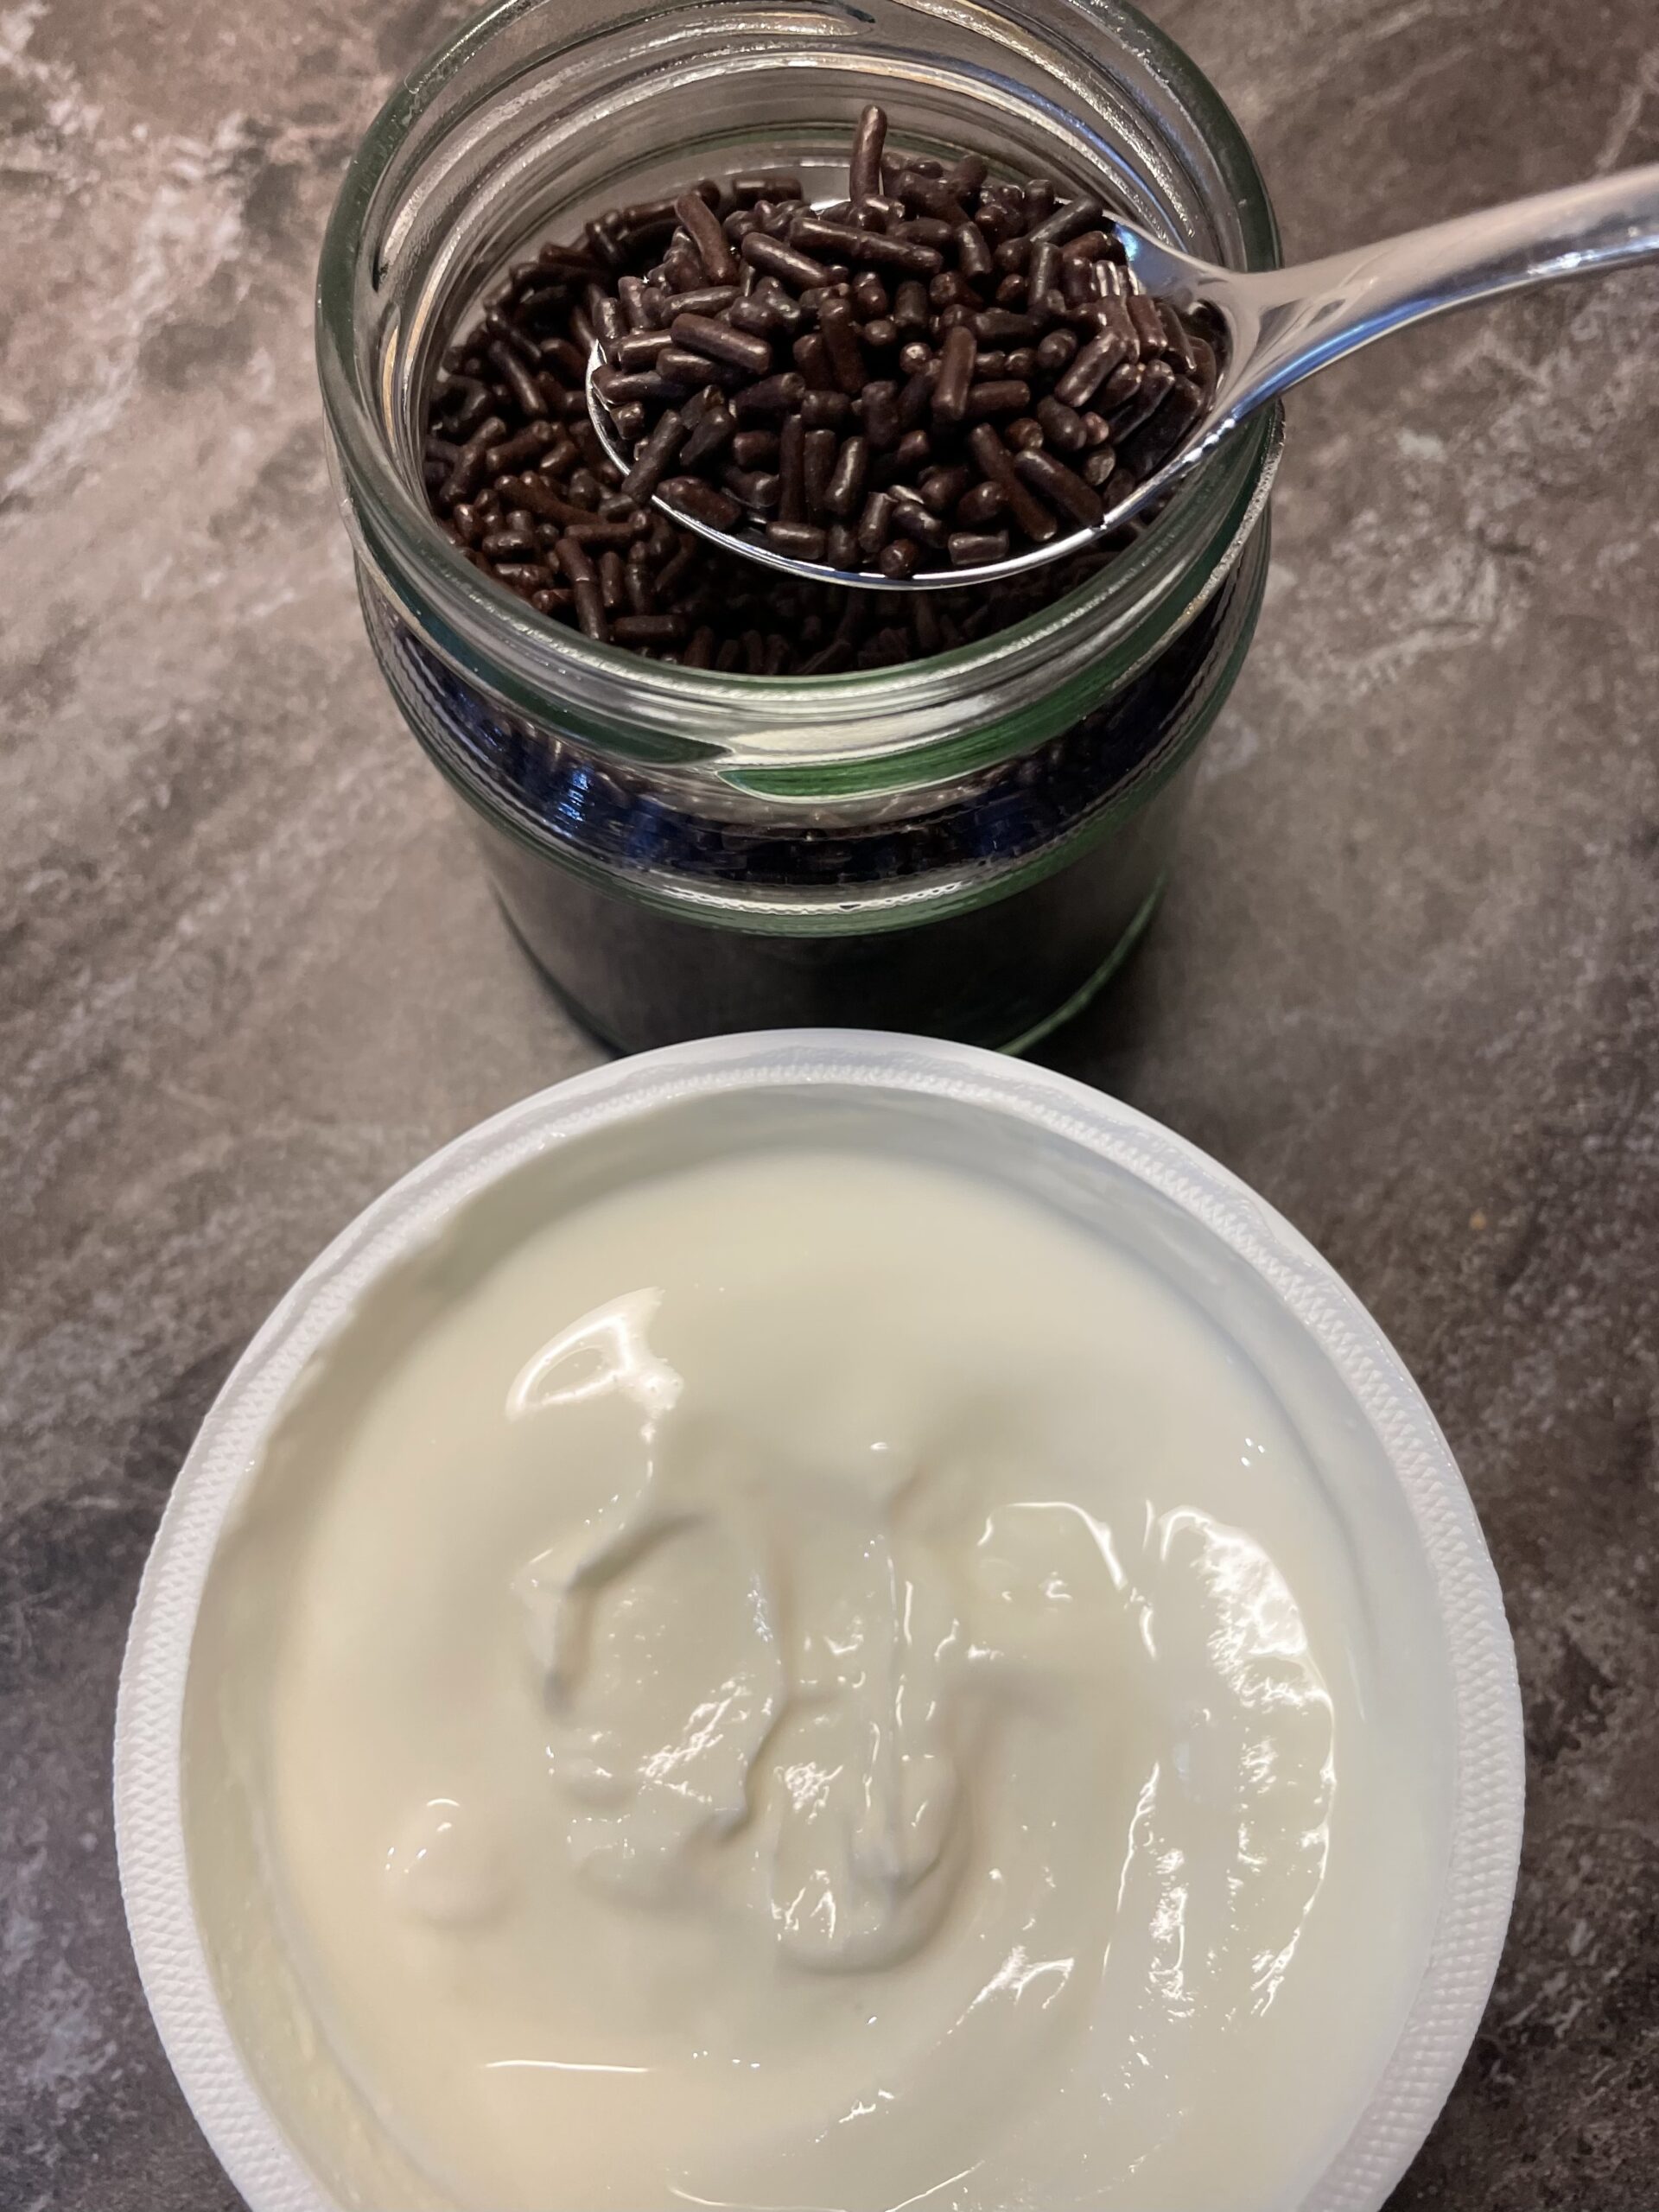 Bild zum Schritt 13 für das Bastel- und DIY-Abenteuer für Kinder: 'Anschließend verfeinert ihr den Joghurt mit 3 Teelöffel Schokoladenstreusel. ...'